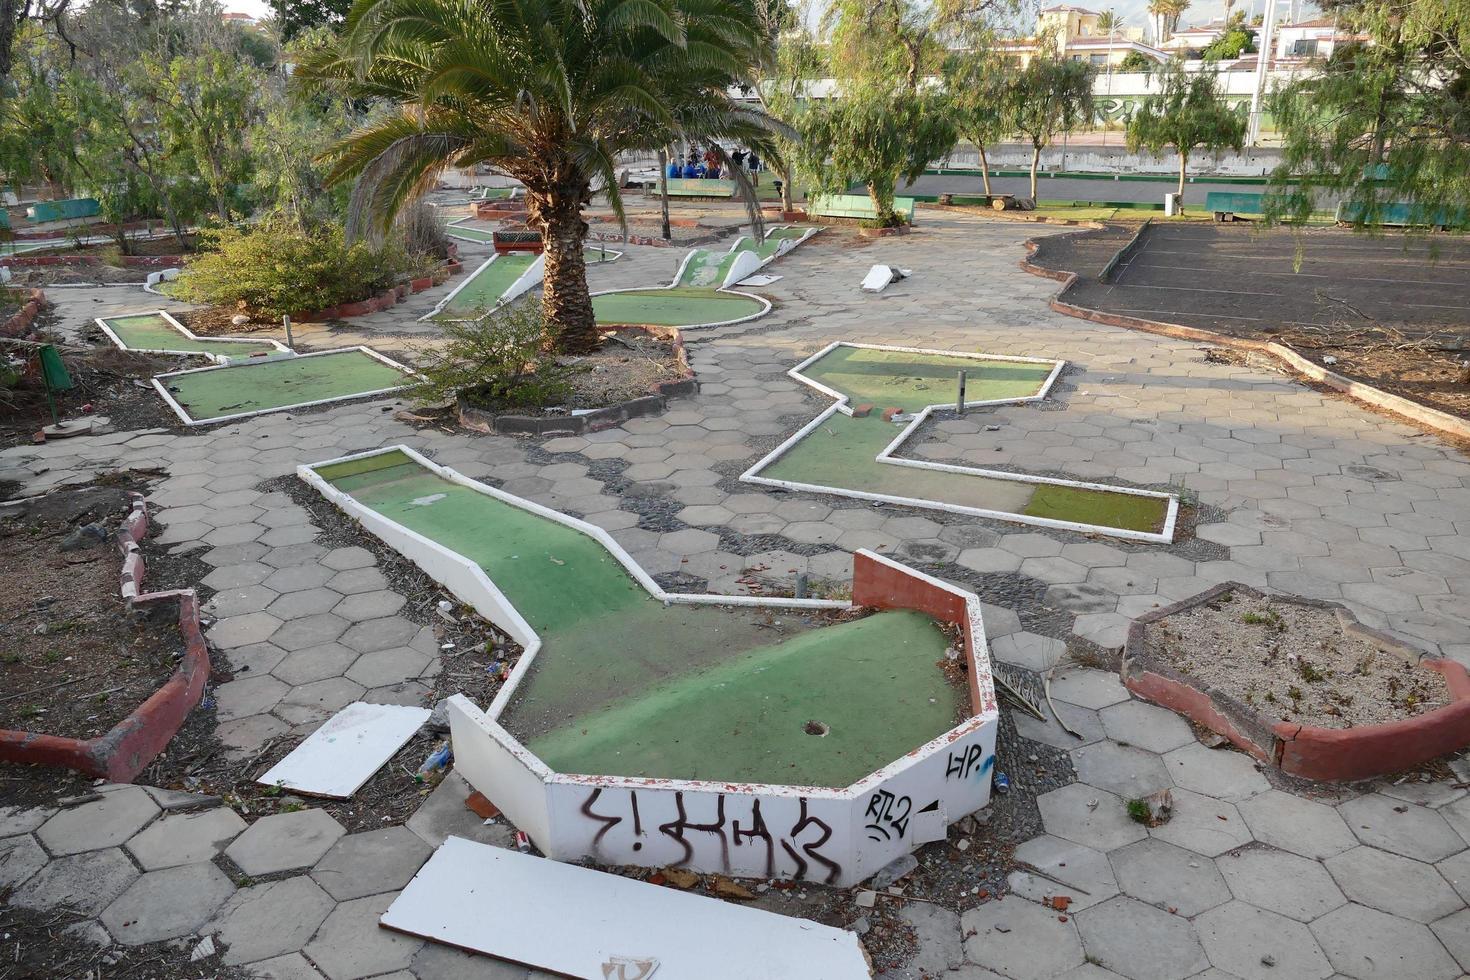 Canary Islands, 2022 - Putt putt golf photo